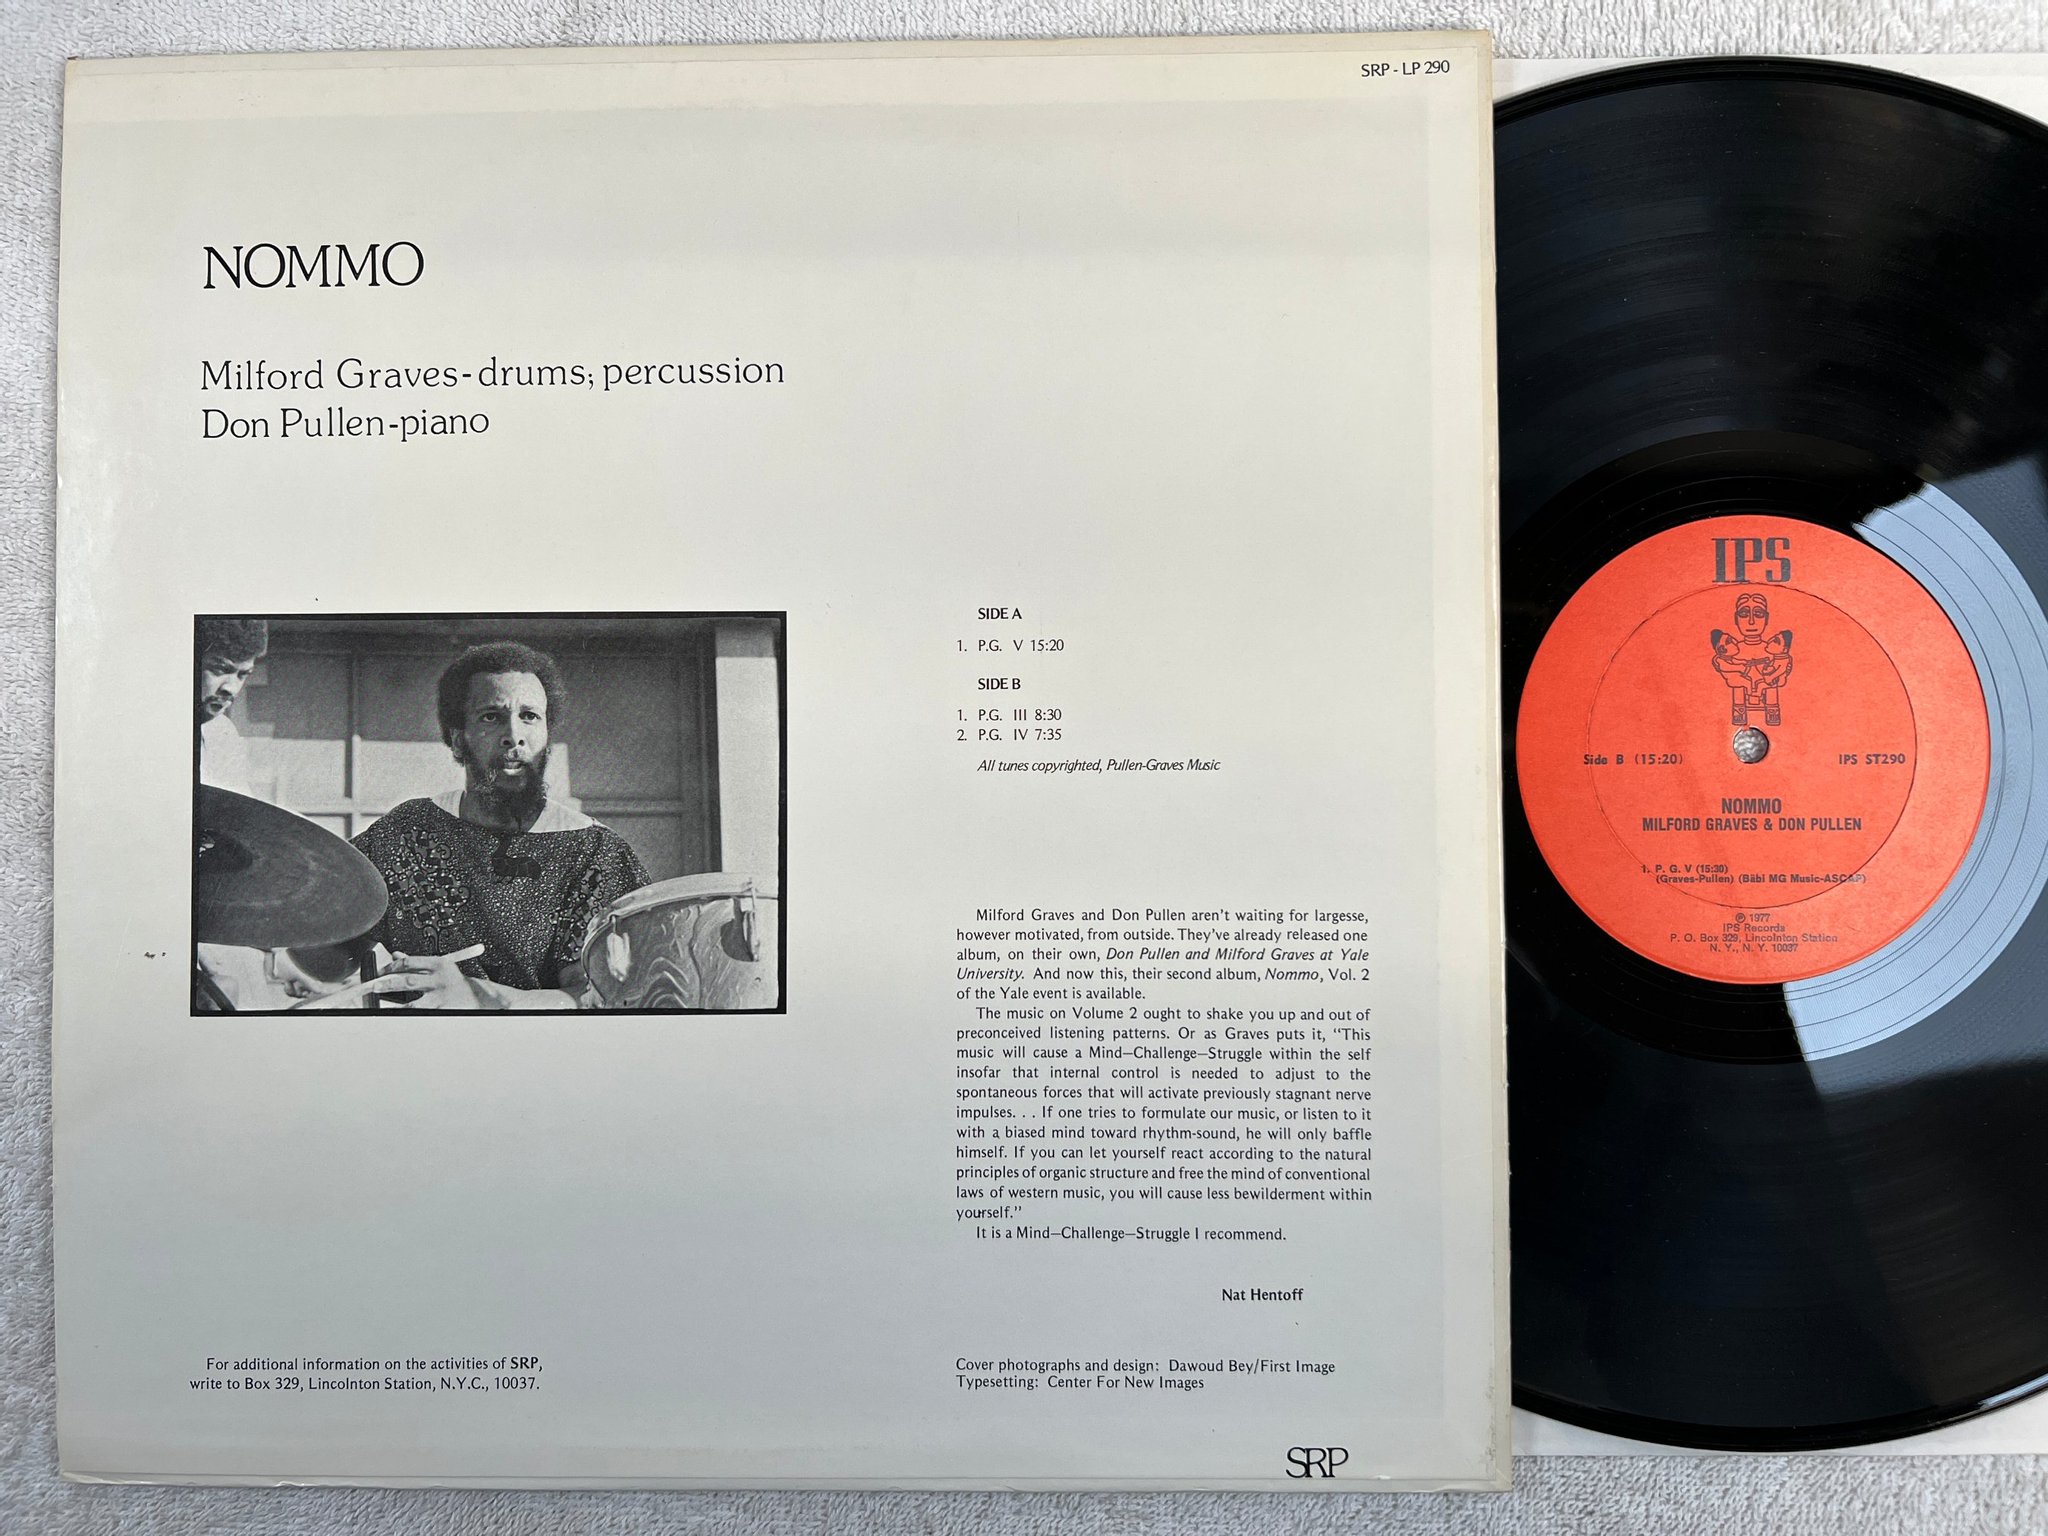 Omslagsbild för skivan MILFORD GRAVES & DON PULLEN nommo LP re US IPS ST290 ** rare ** free jazz 